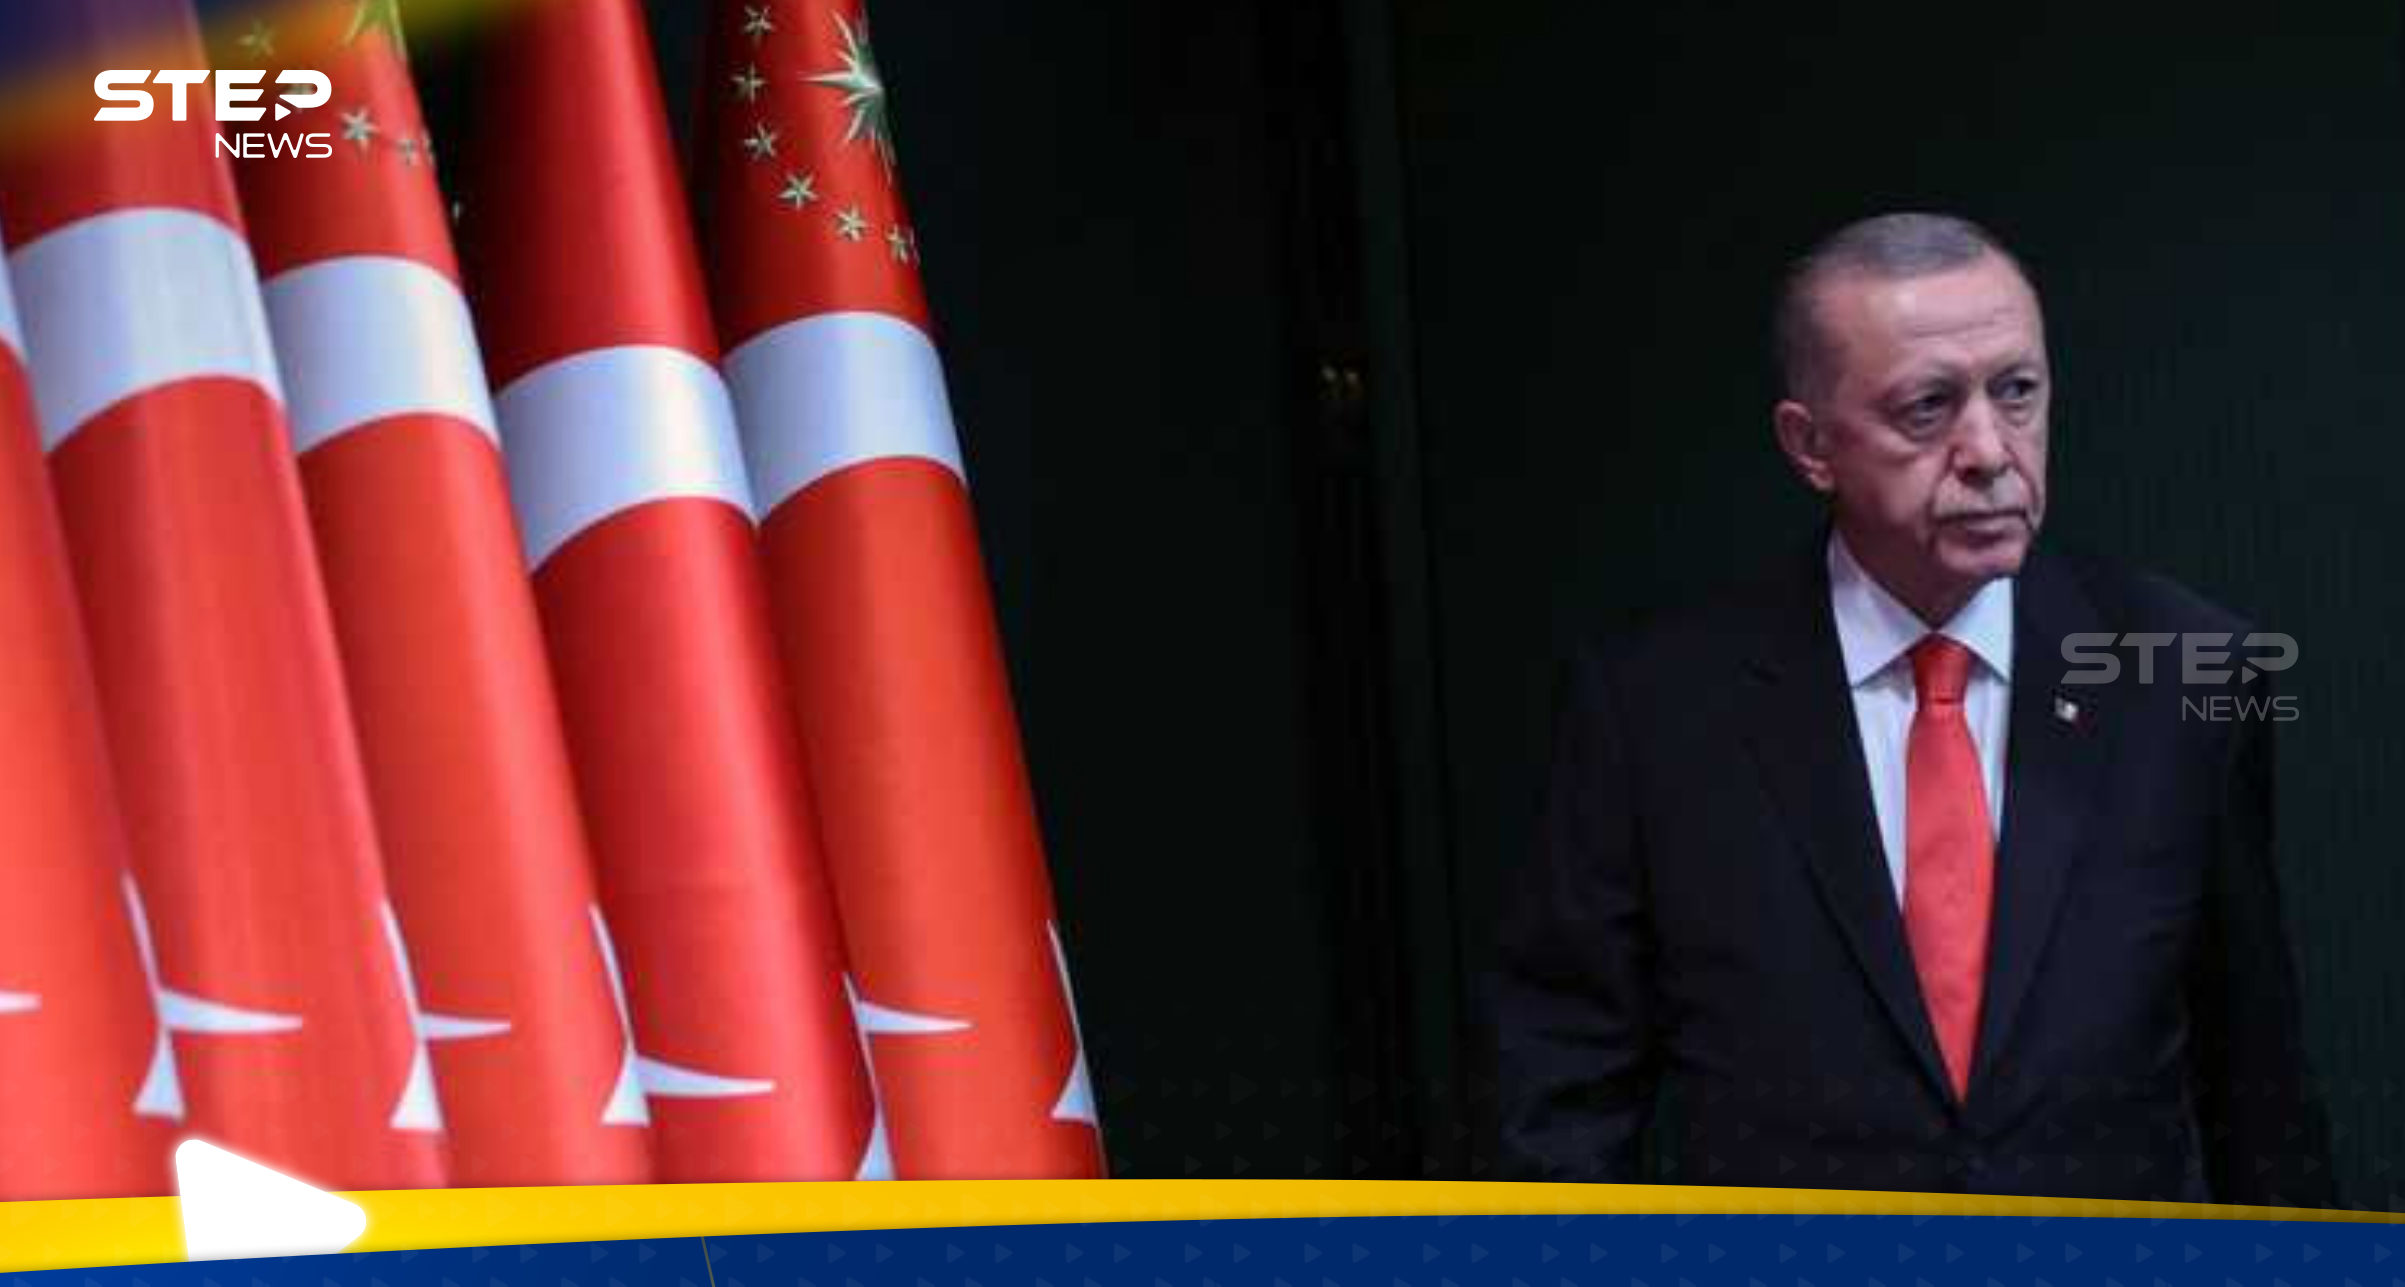 لأول مرة أردوغان يتحدث عن نهاية حياته السياسية بتركيا بعد عقود من الحكم 